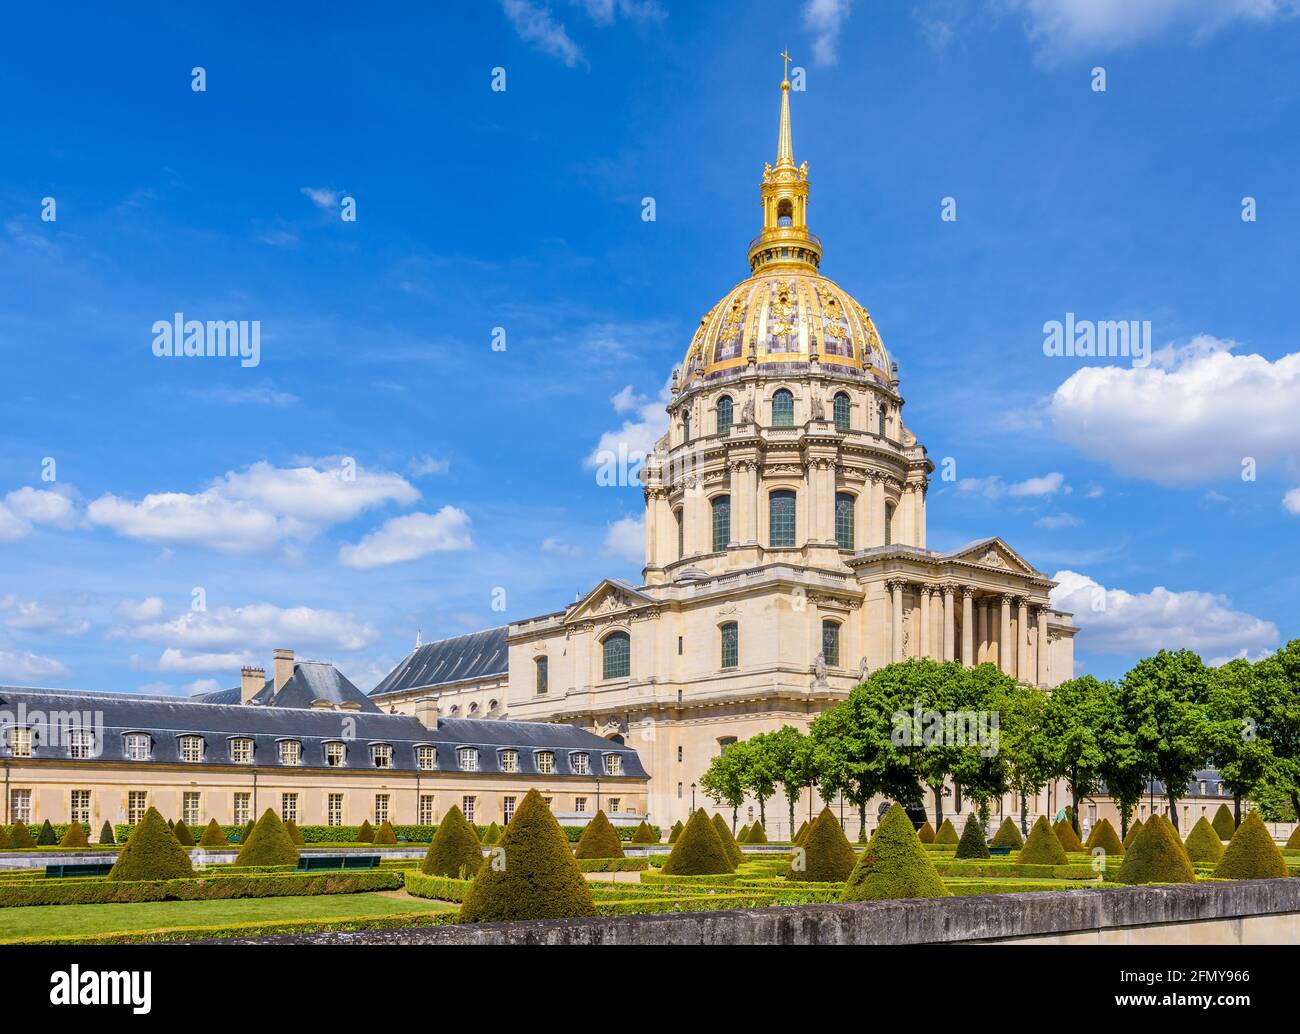 Le Dôme des Invalides à Paris, en France, une ancienne église avec une coupole dorée qui abrite le tombeau de Napoléon Bonaparte, et le jardin du sud-ouest. Banque D'Images